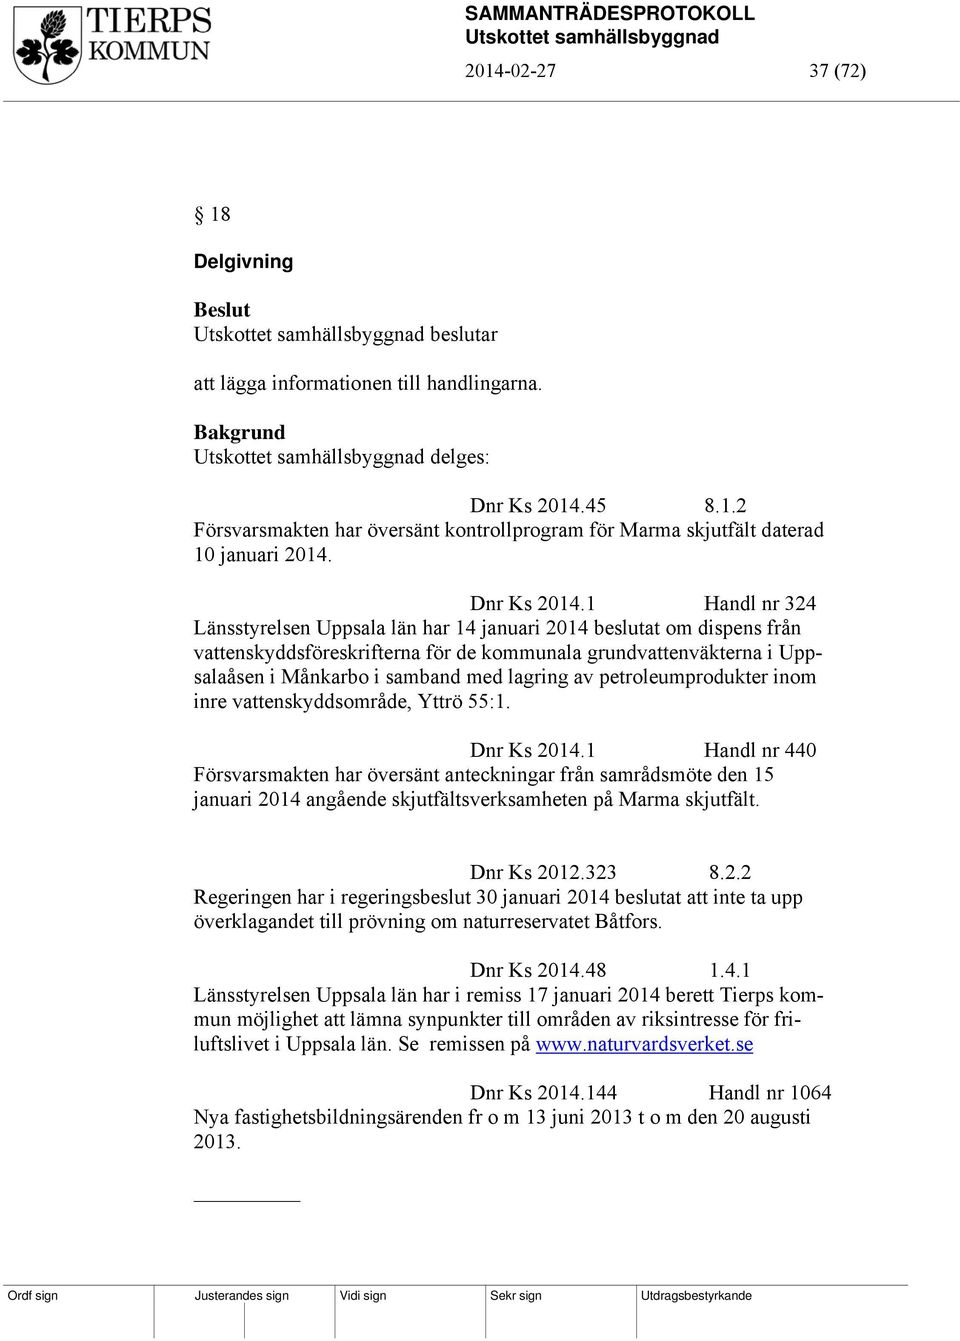 1 Handl nr 324 Länsstyrelsen Uppsala län har 14 januari 2014 beslutat om dispens från vattenskyddsföreskrifterna för de kommunala grundvattenväkterna i Uppsalaåsen i Månkarbo i samband med lagring av